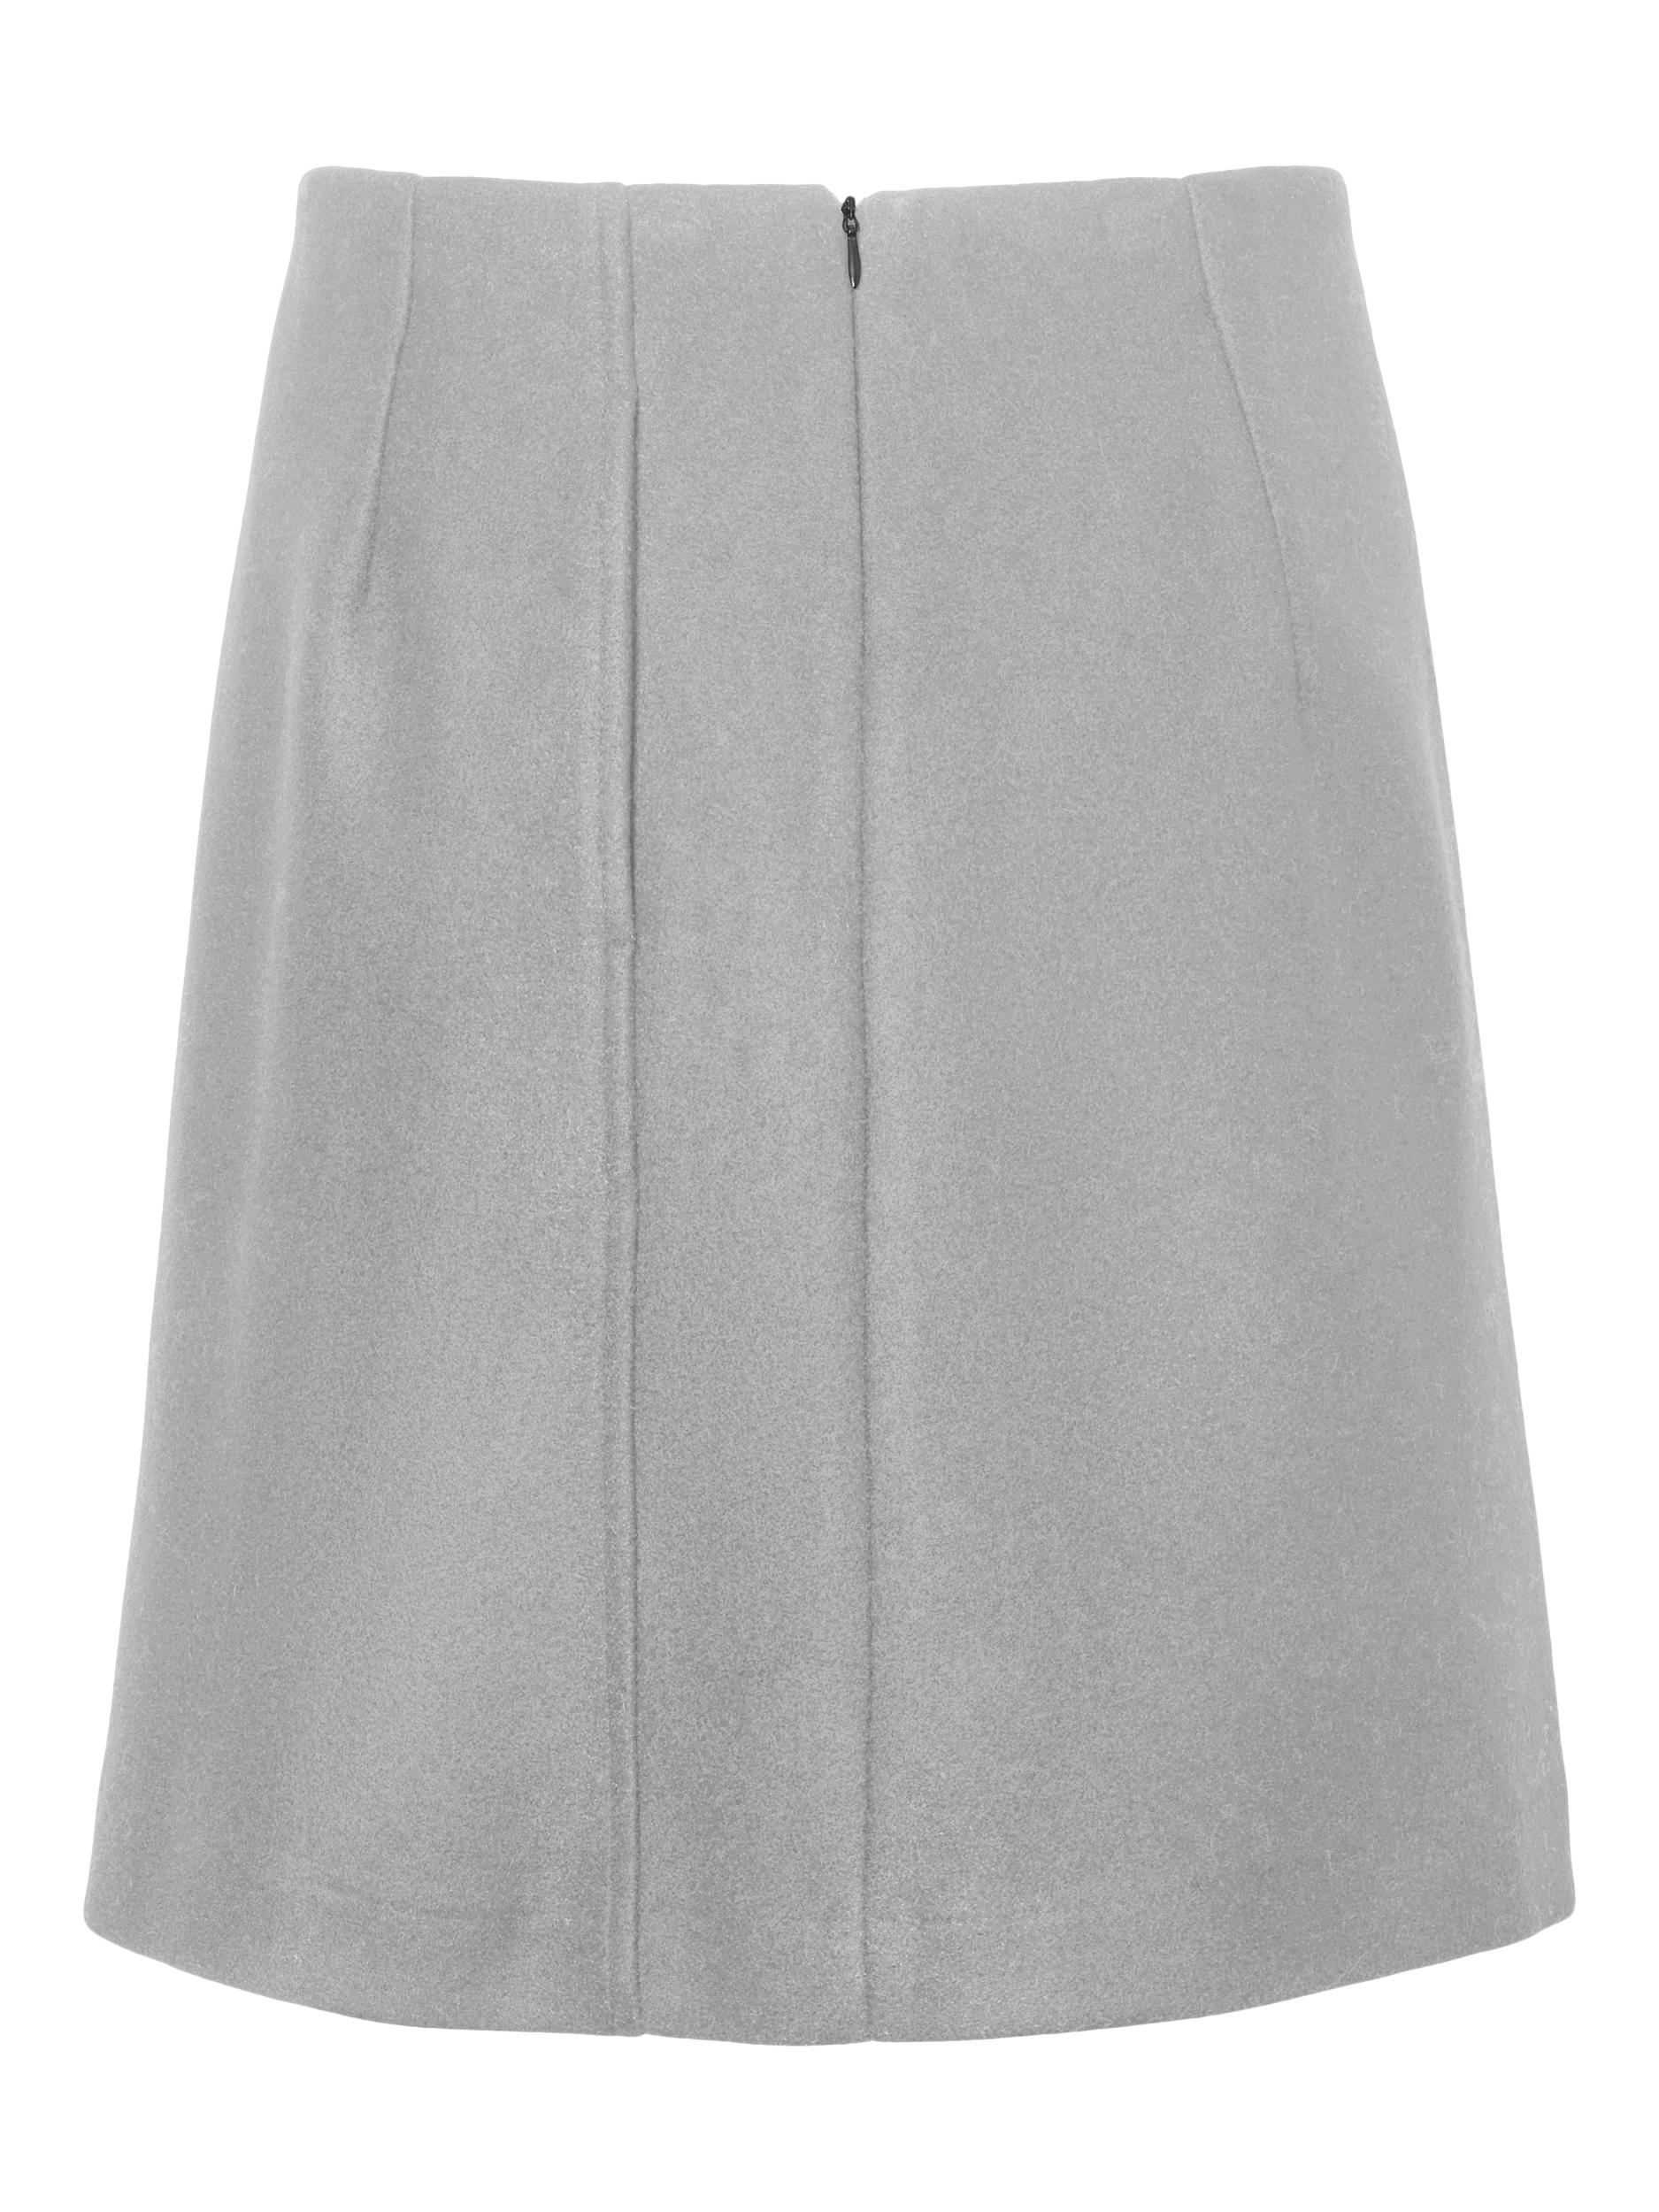 Vero Moda | Allison high waist mini skirt